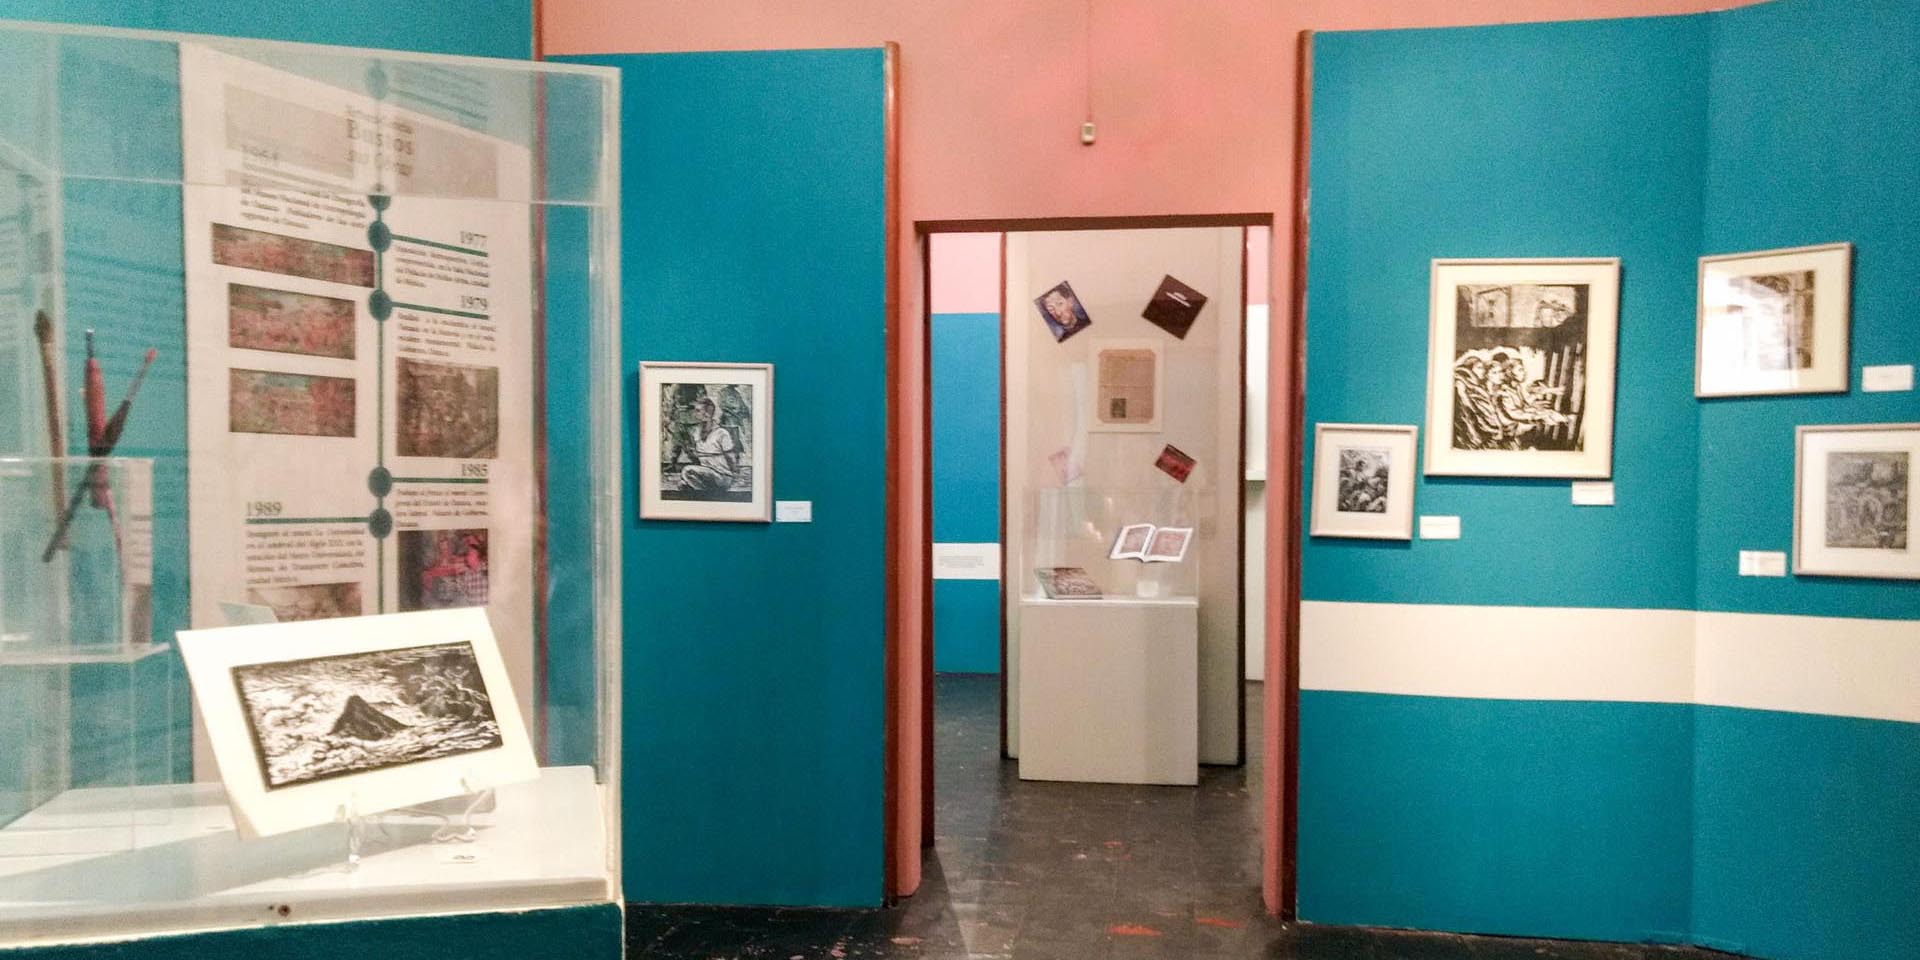 Vista de las dos salas que comprende la Galería de Arte del MUSAC, en los páneles se aprecia la exhibición de grabados del artista mexicano Arturo García Bustos y carteles sobre su trayectoria.